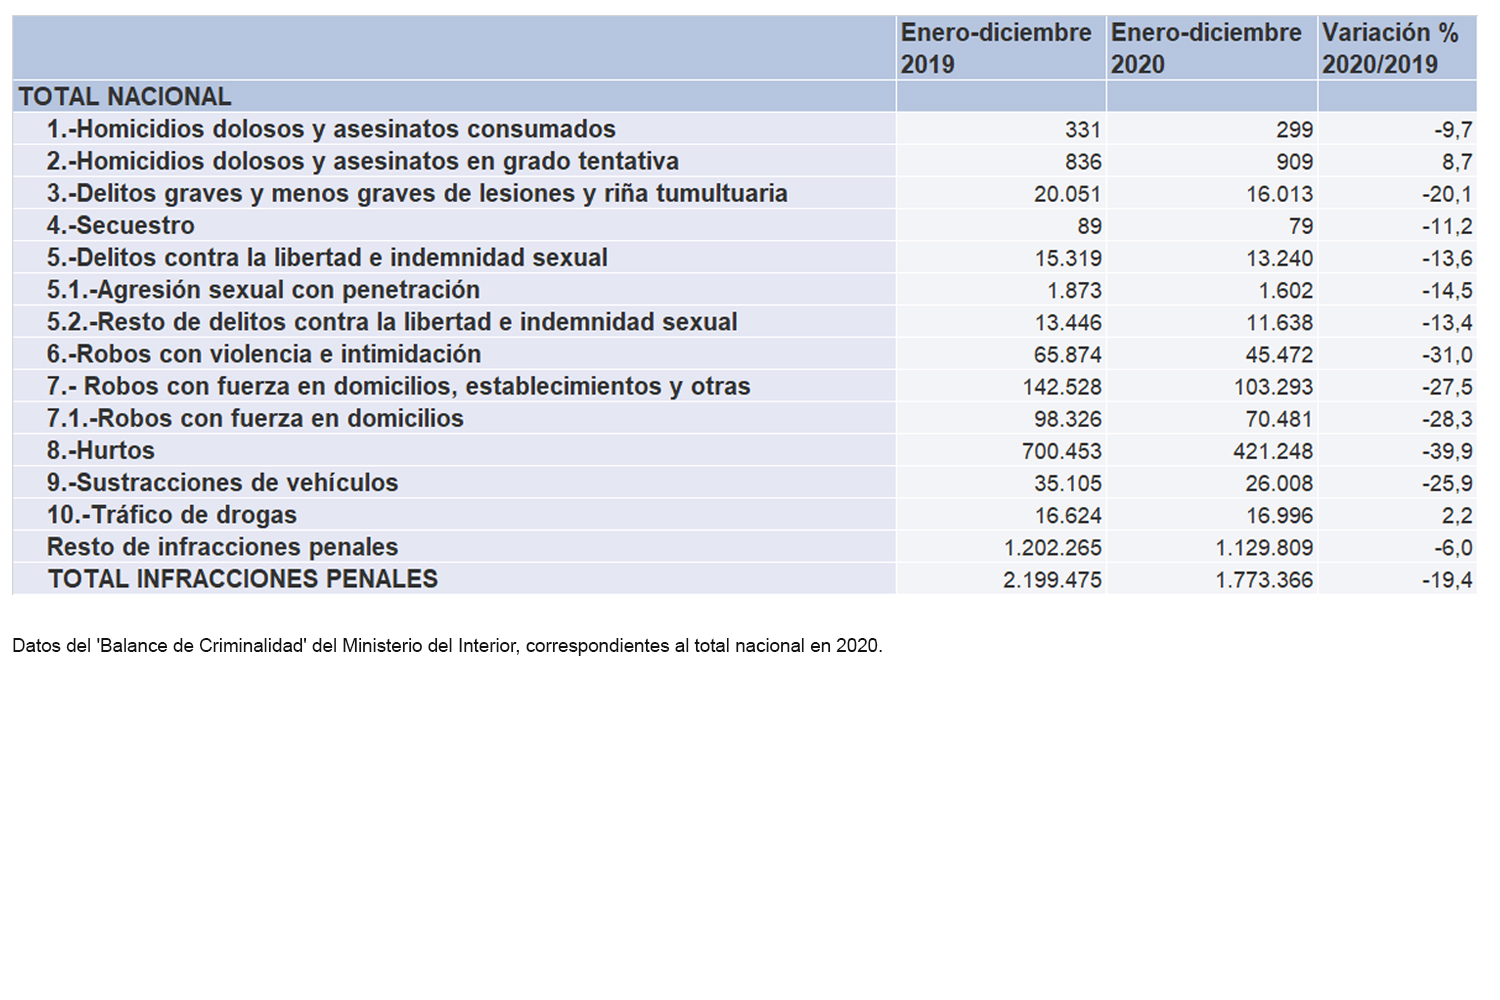 Datos del Balance de Criminalidad del Ministerio del Interior.